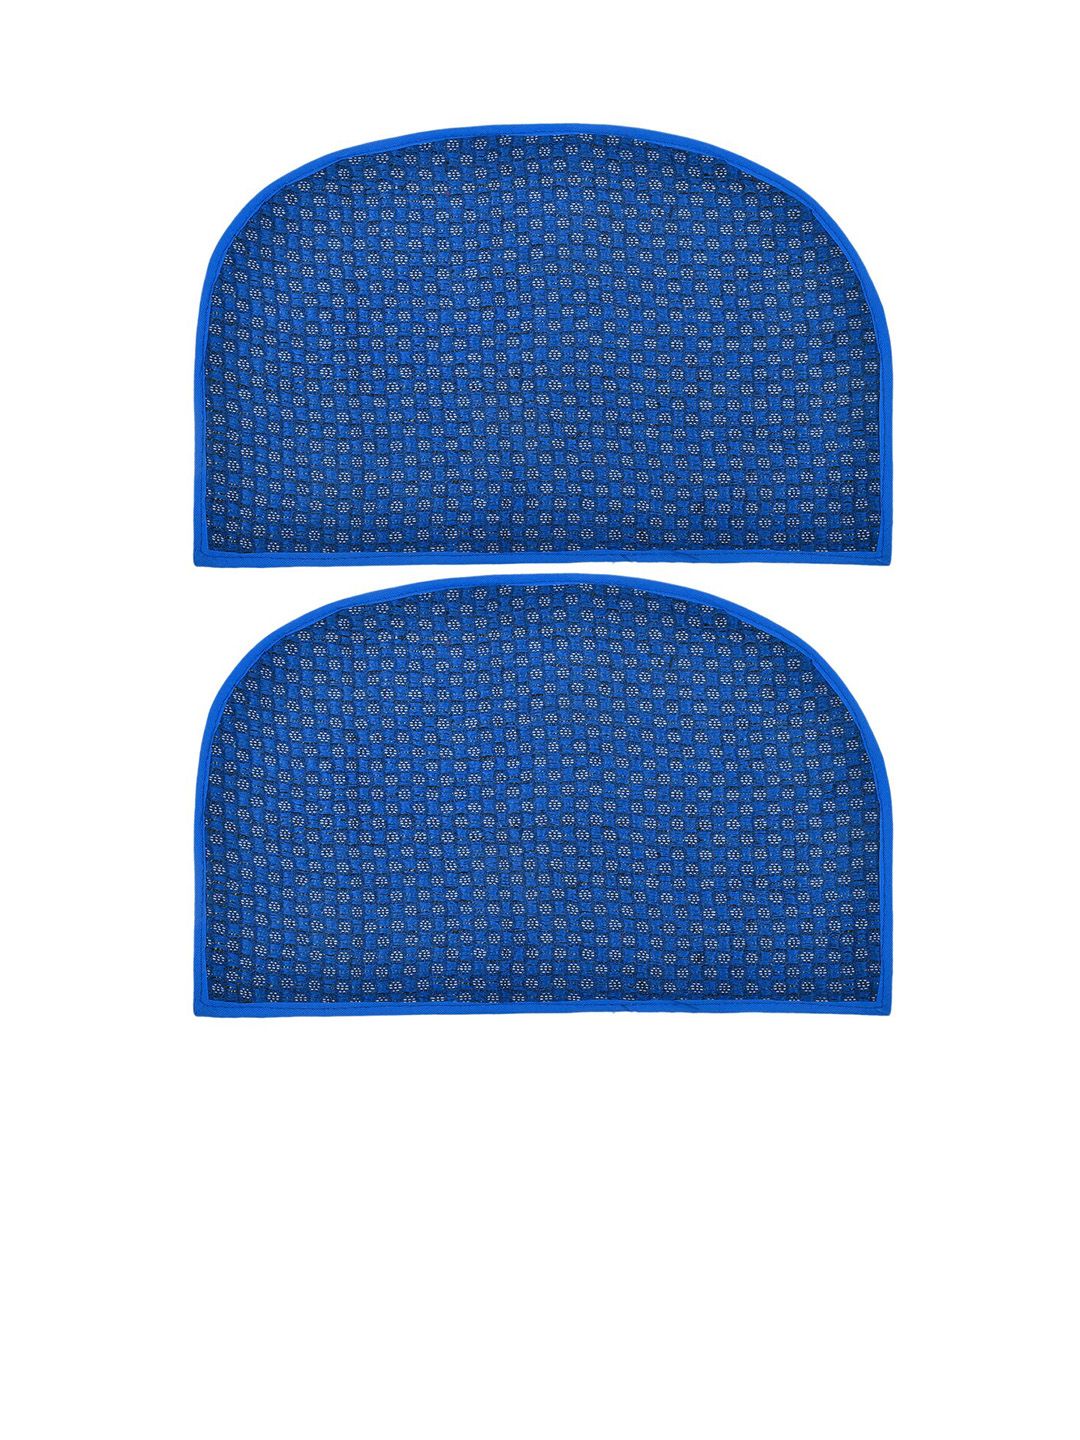 Kuber Industries Set Of 2 Blue Printed Anti-Skid Doormats Price in India